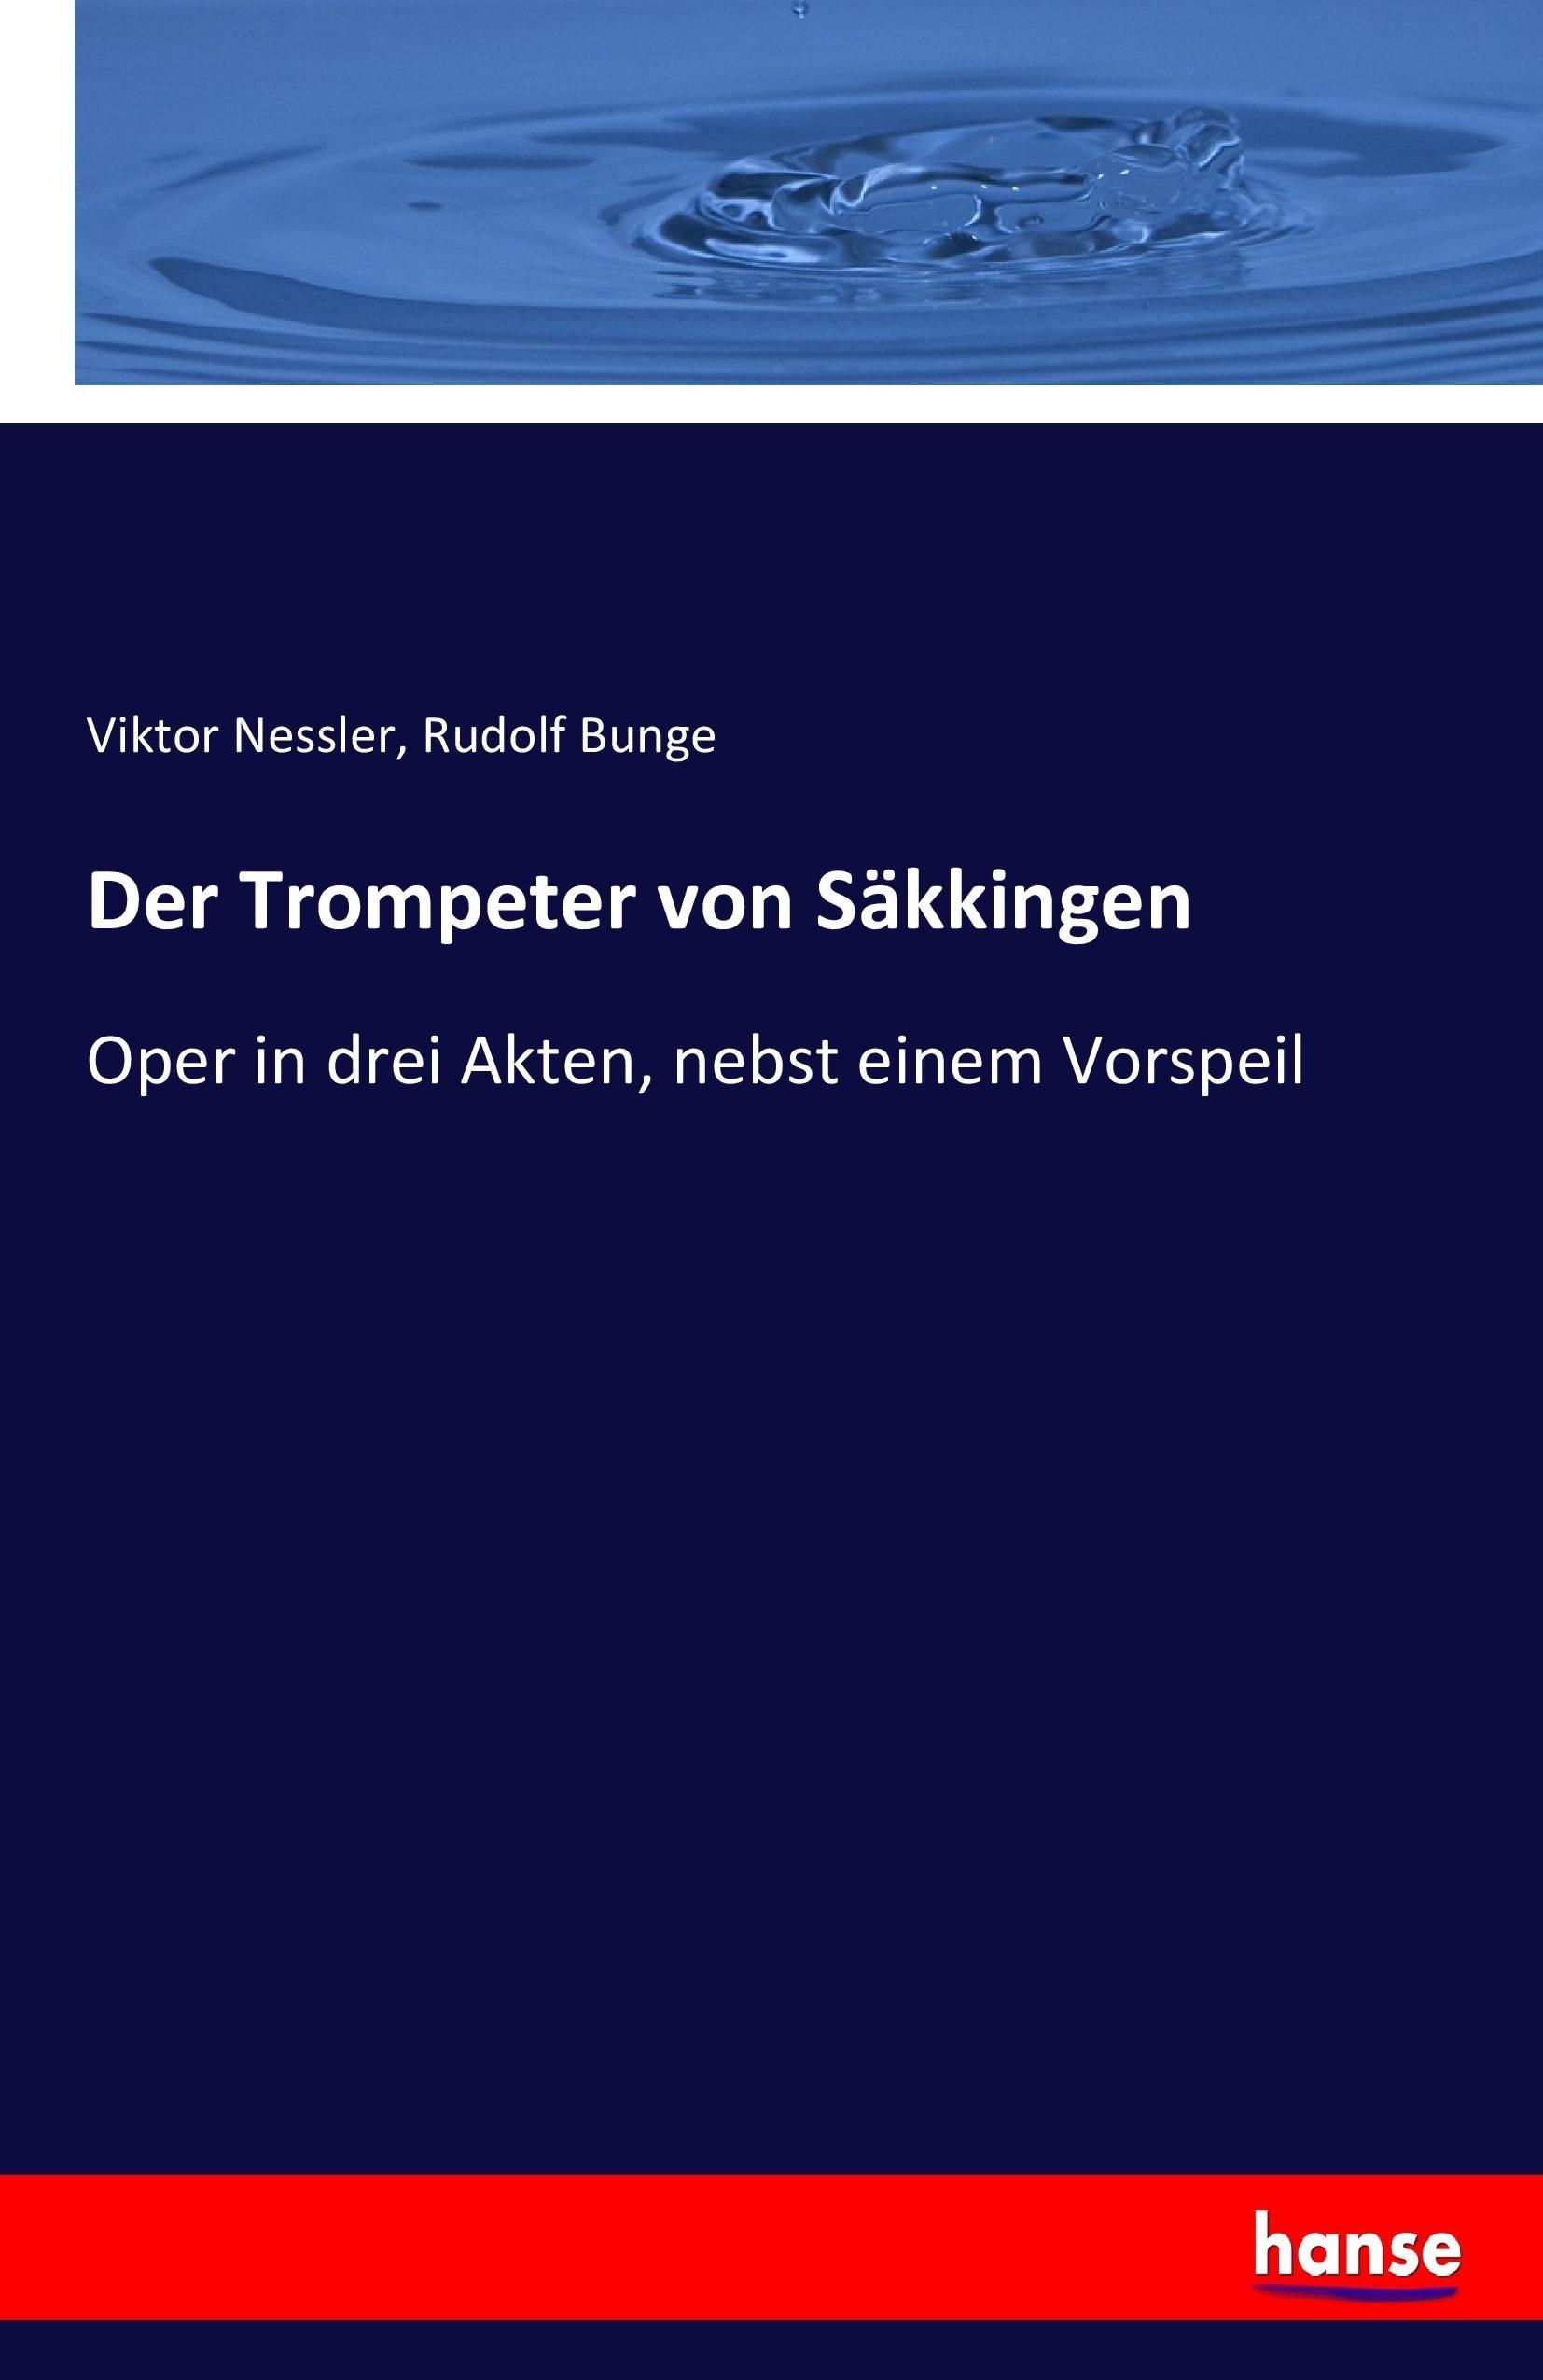 Der Trompeter von Saekkingen - Nessler, Viktor Bunge, Rudolf